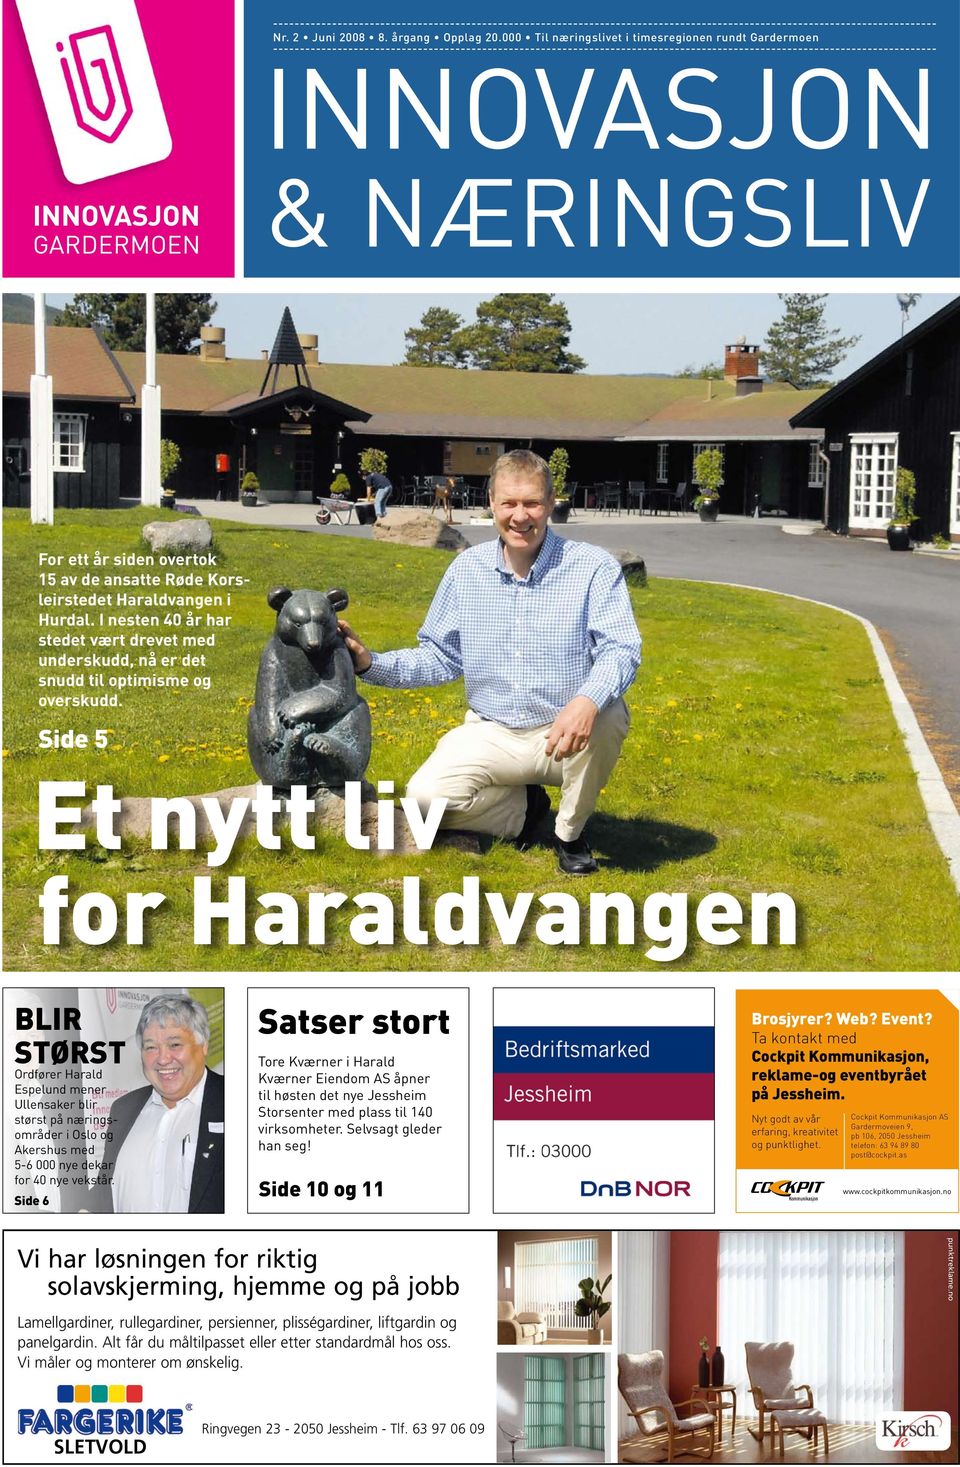 overtok 15 av de ansatte Røde Korsleirstedet Haraldvangen i Hurdal. I nesten 40 år har stedet vært drevet med underskudd, nå er det snudd til optimisme og overskudd.